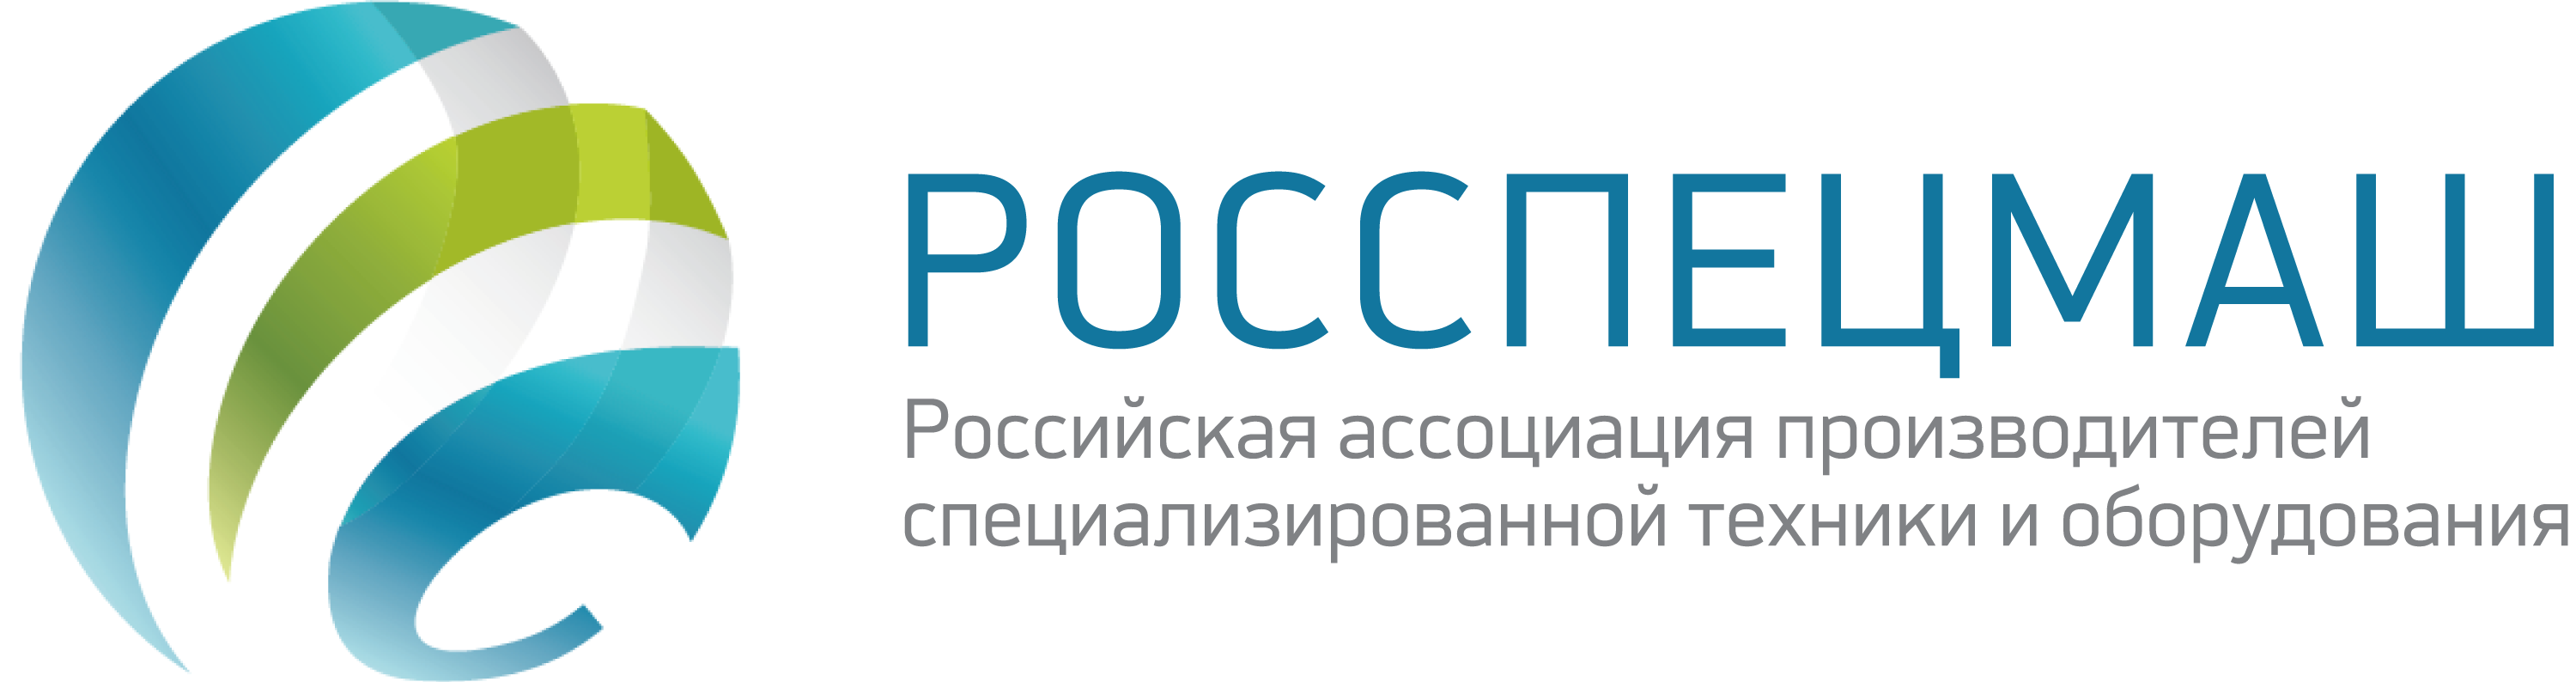 «Российская ассоциация производителей специализированной техники и оборудования